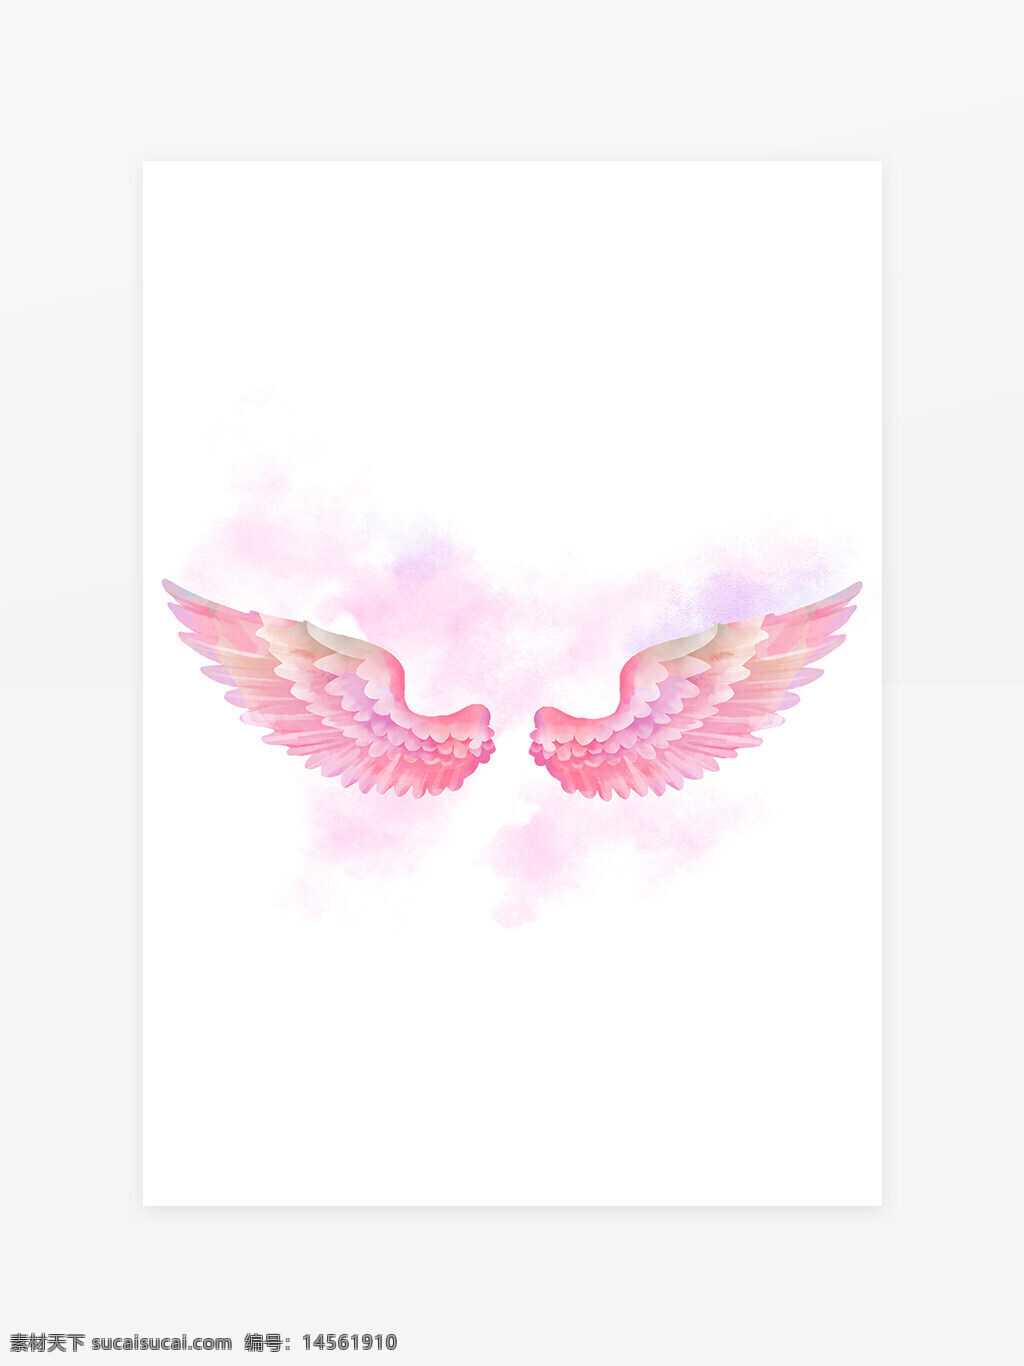 粉红色羽毛 翅膀素材 天使翅膀 鸟之羽翼 飞翔翅膀 水彩素材